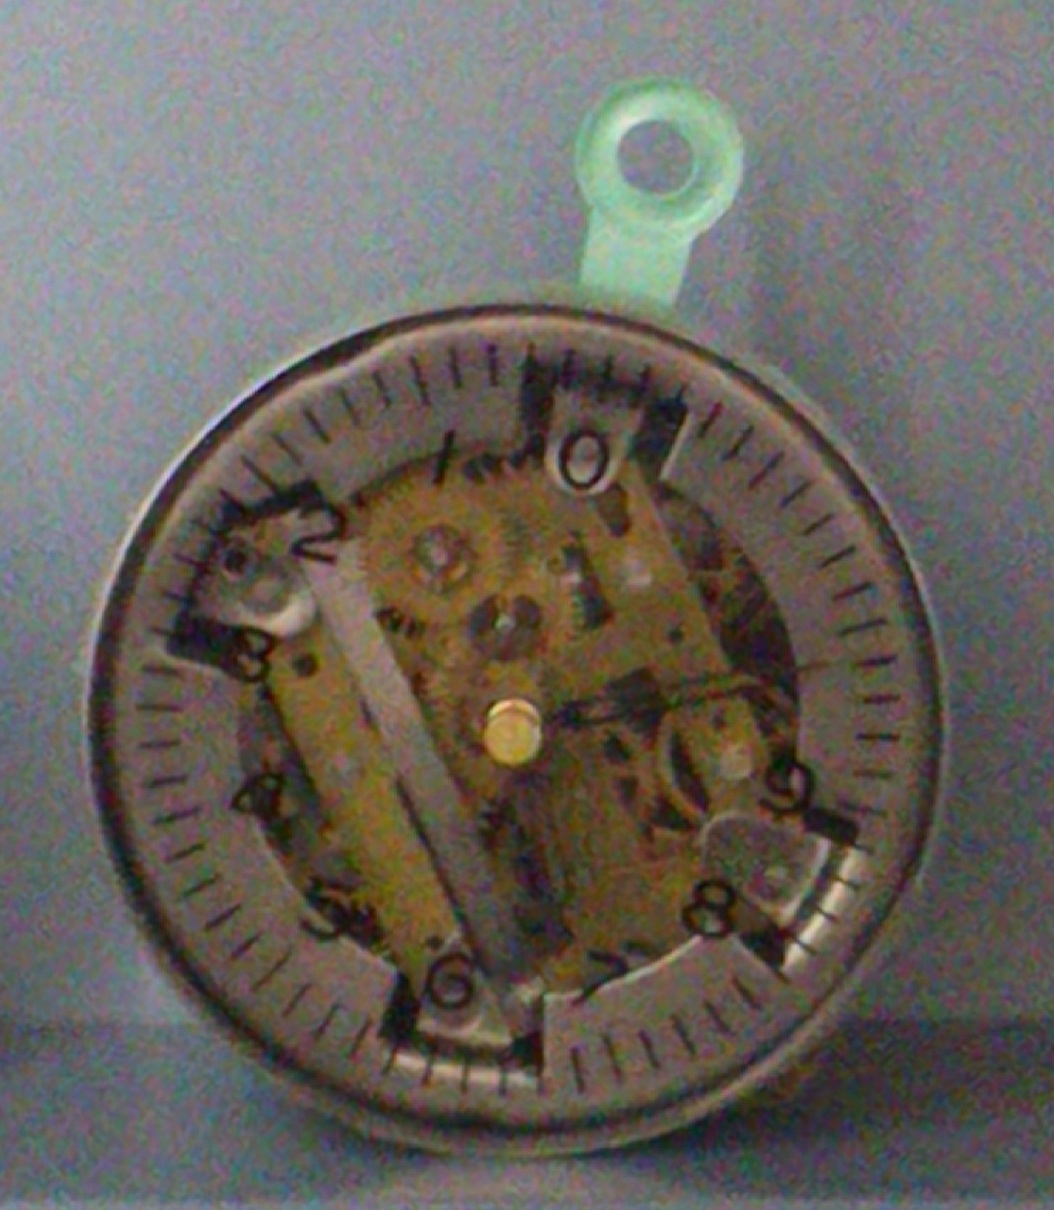 Flugblatt-Abwurf-Wecker (Uhrenindustriemuseum Villingen-Schwenningen CC BY-NC-SA)